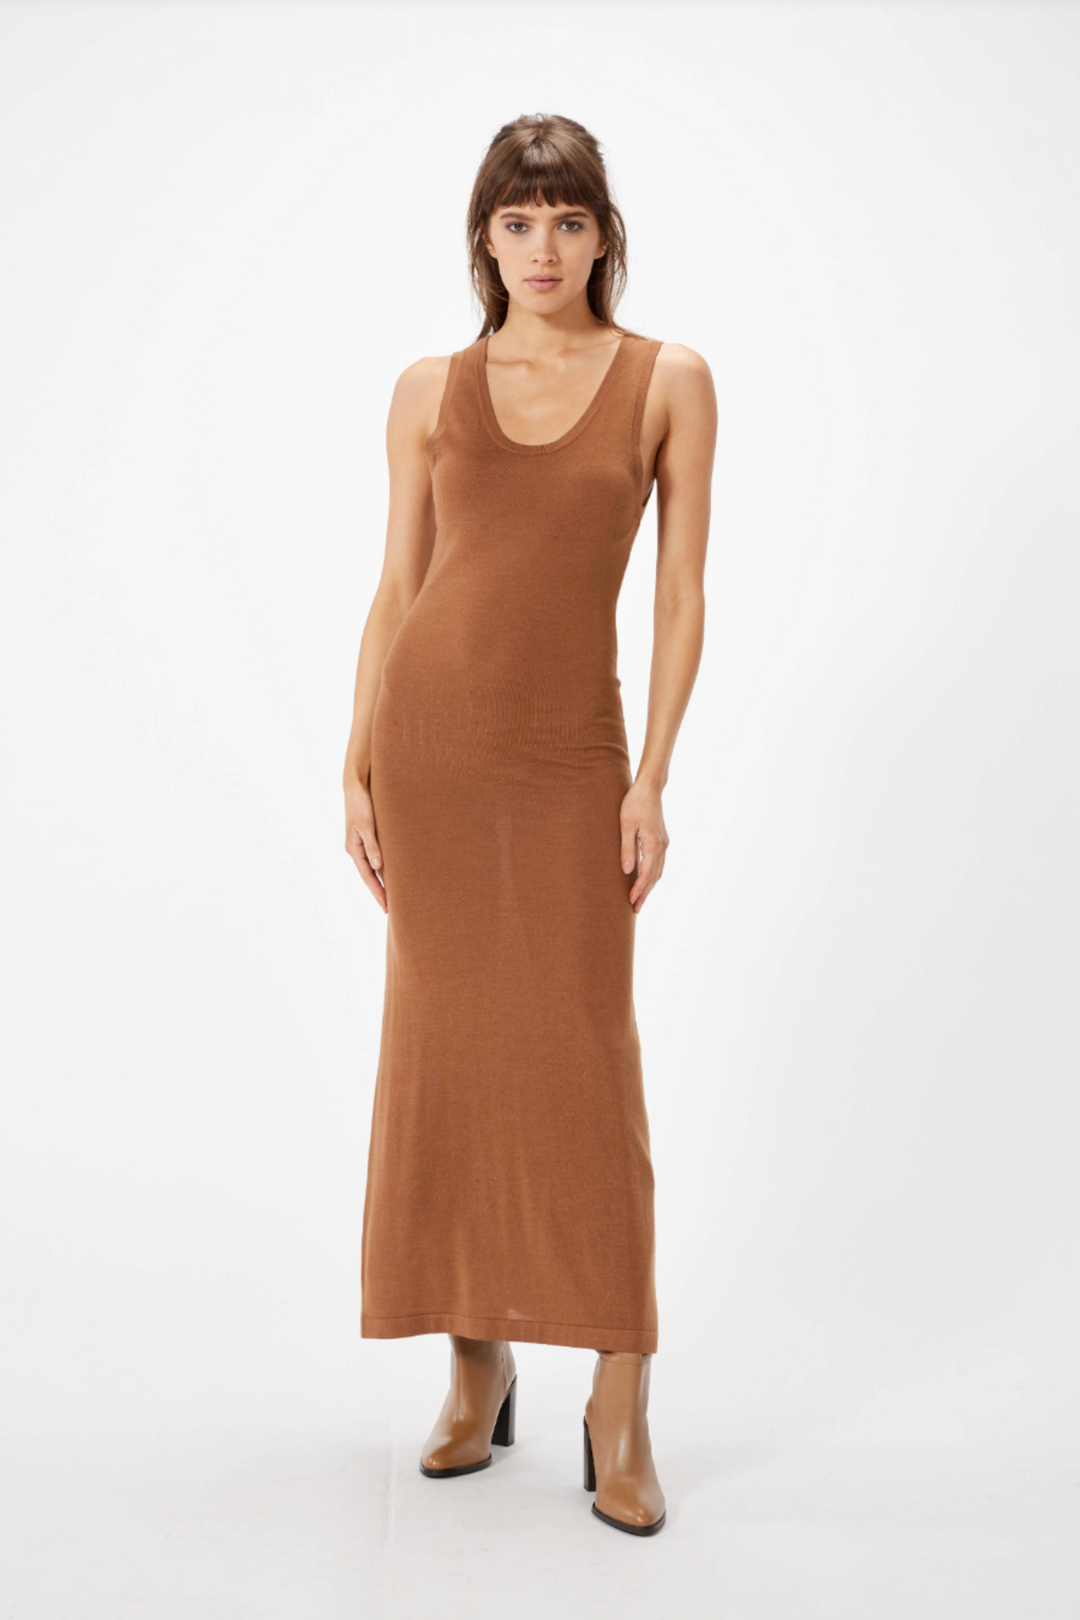 SOPHIE RUE Long Sweater Dress- Cinnamon